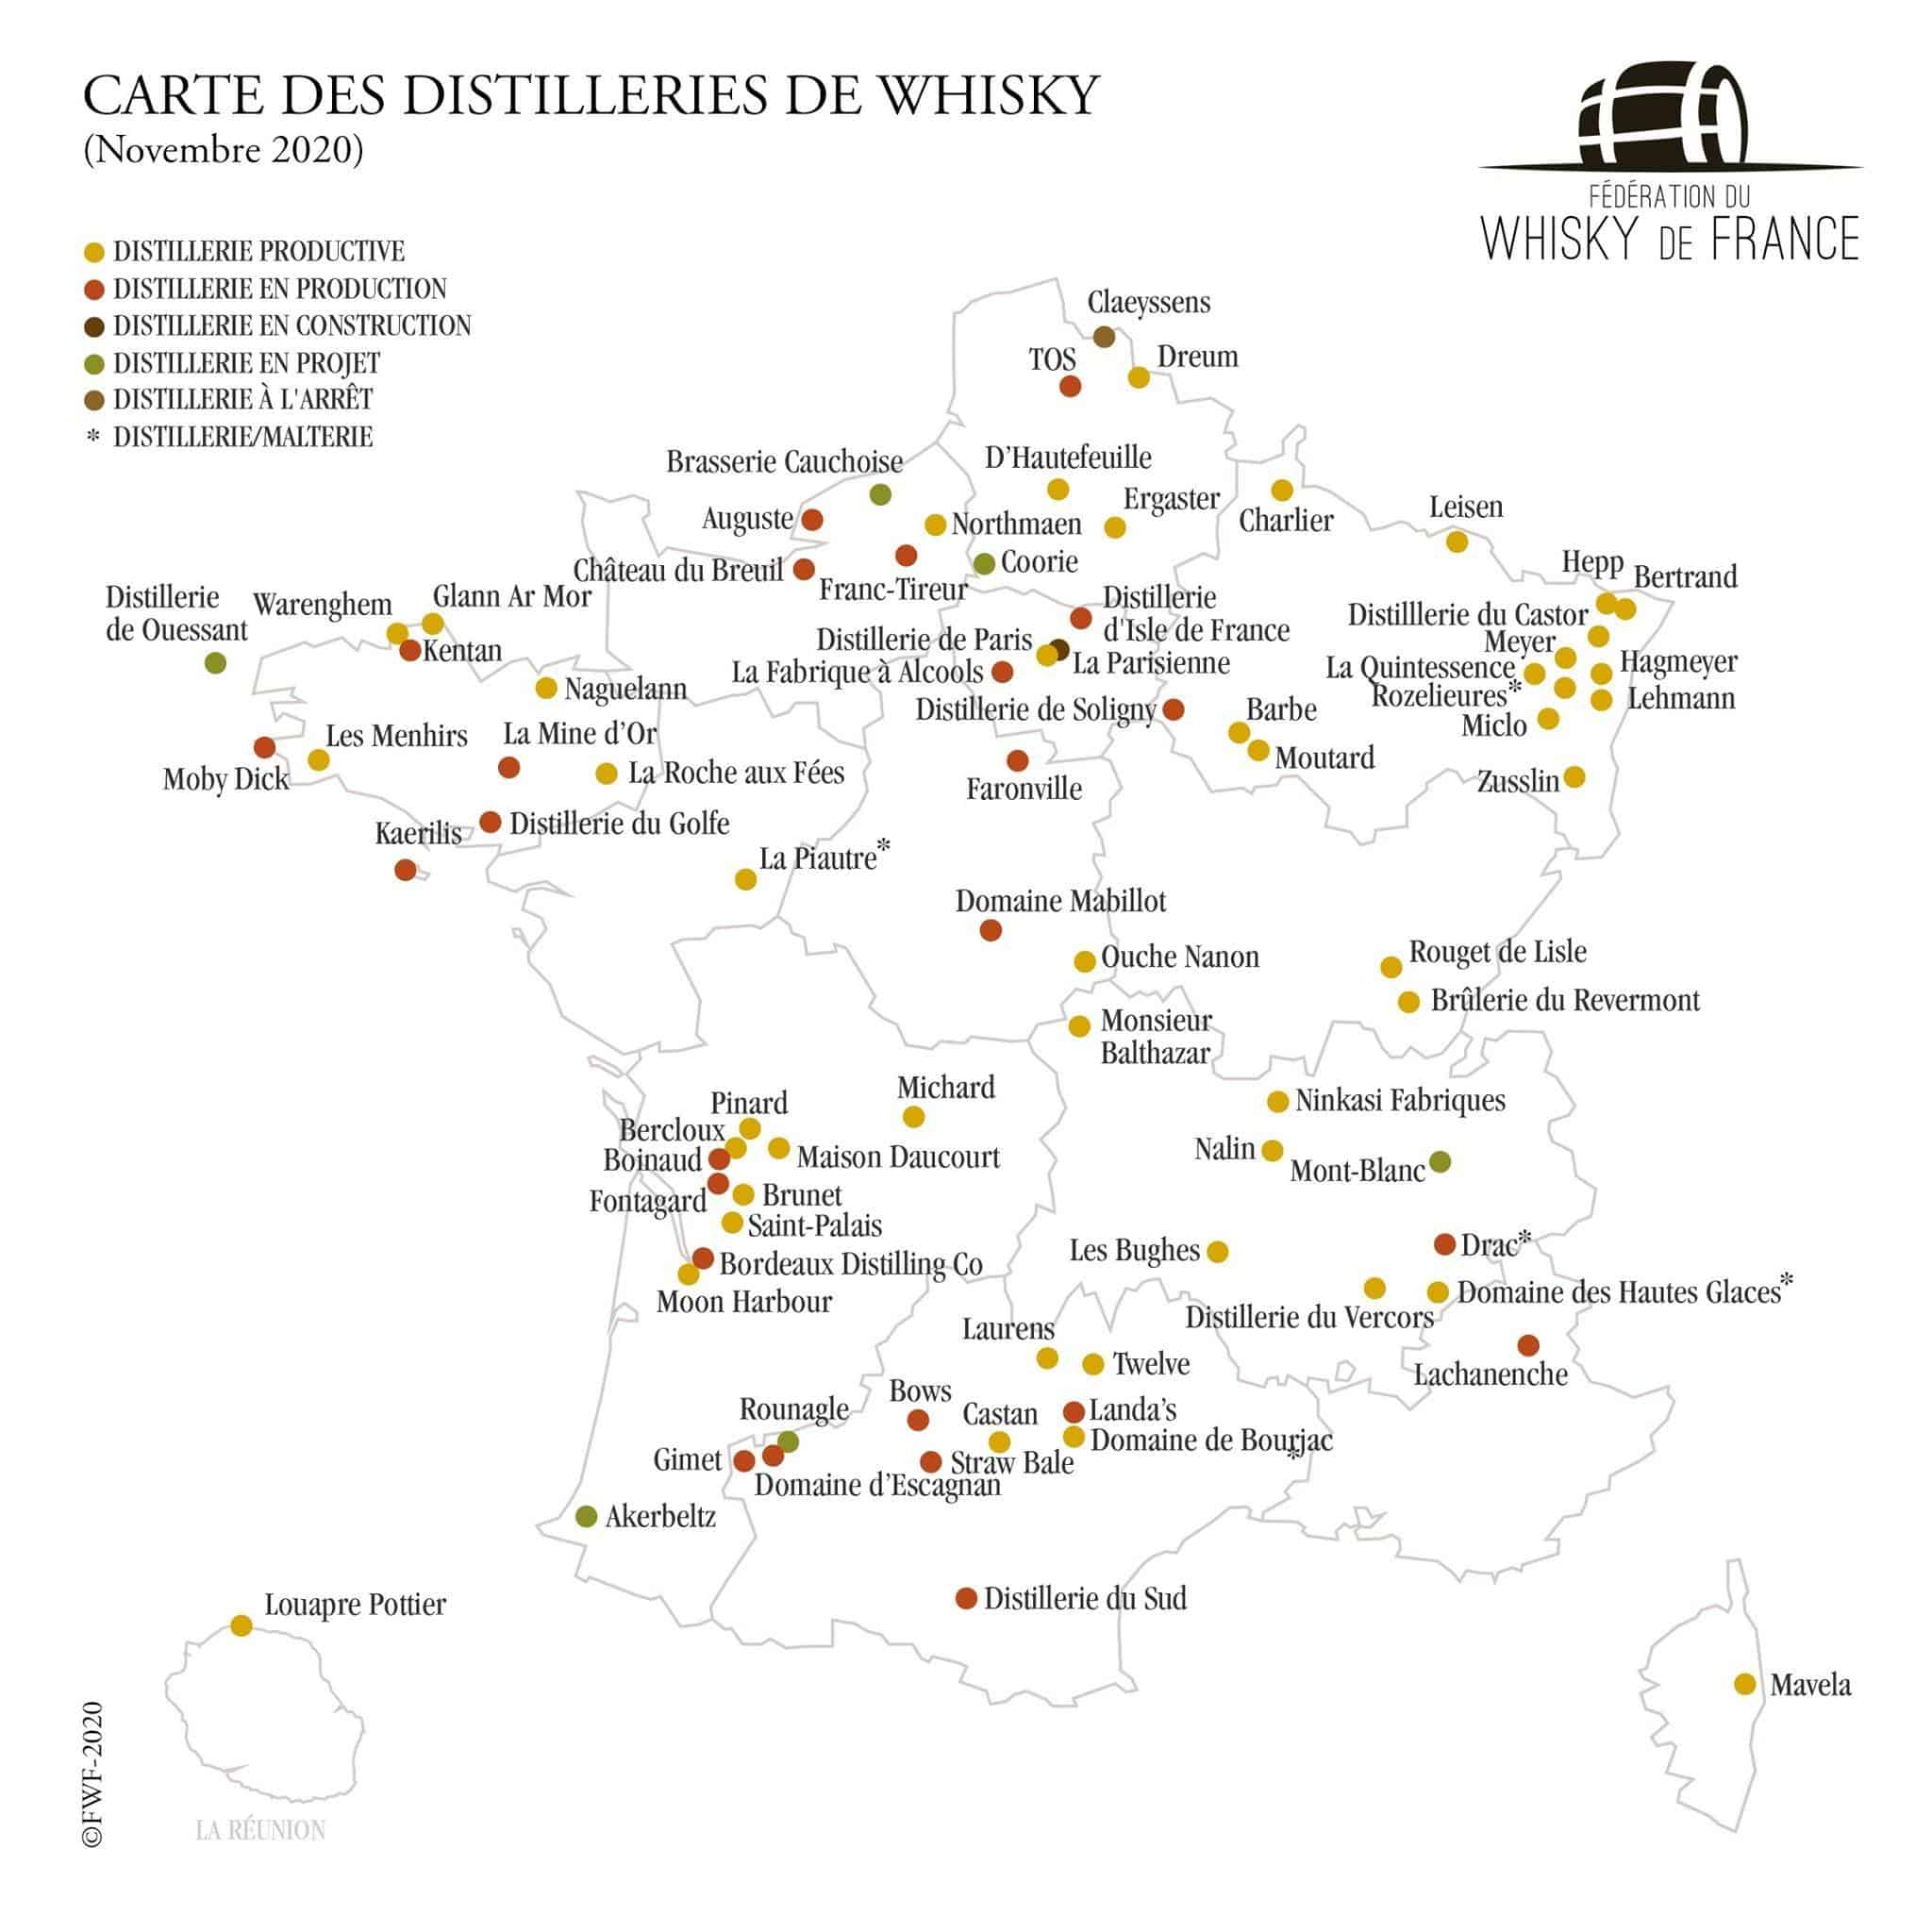 Whisky de France : la carte des distilleries (novembre 2020)